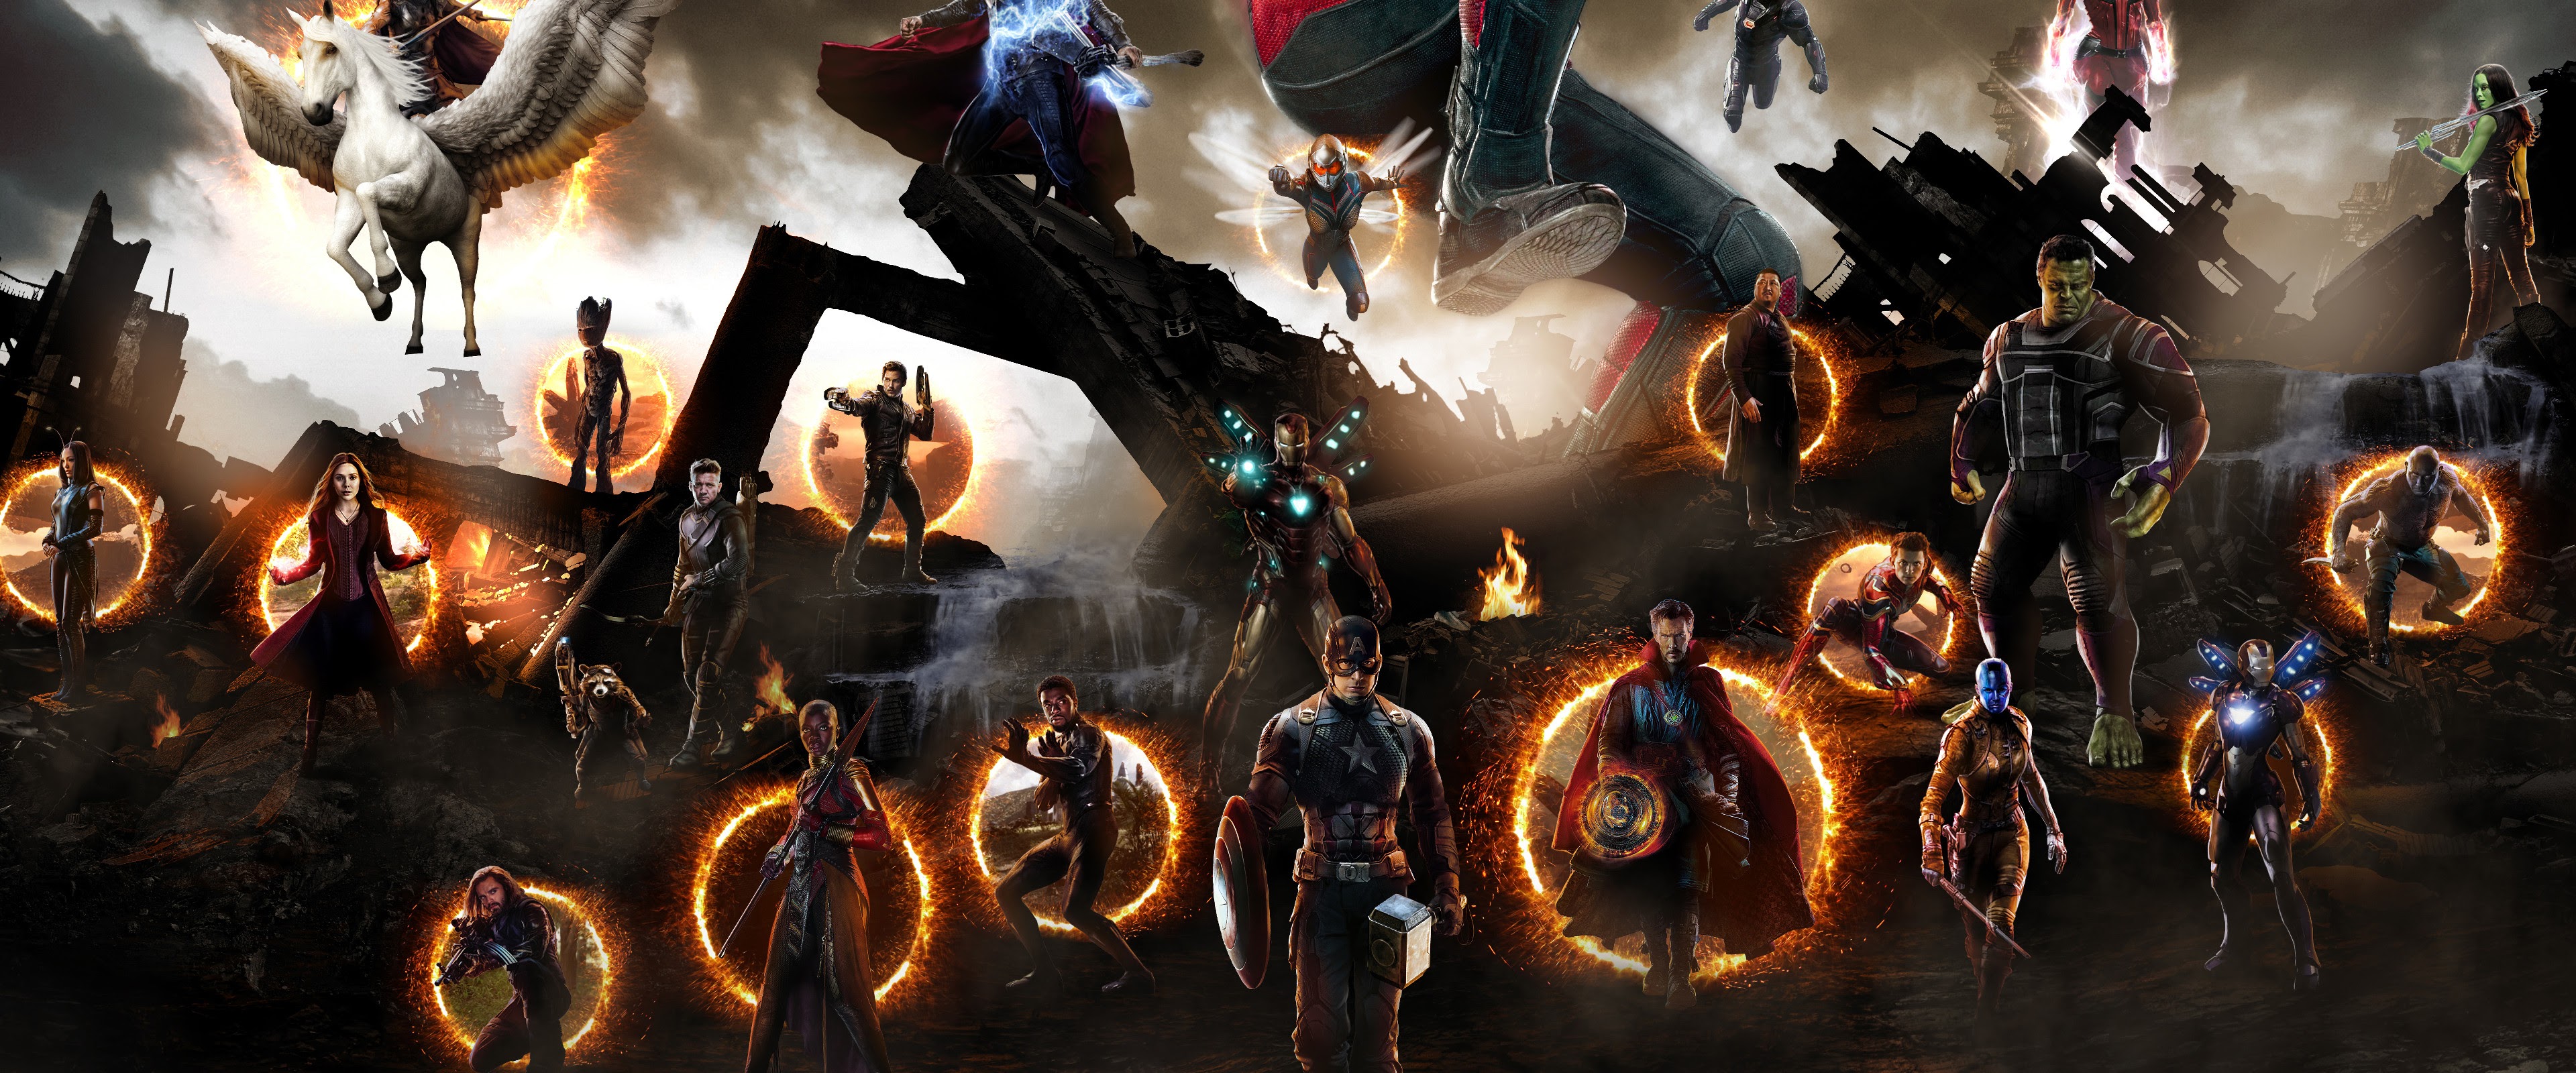 Endgame, Final Battle, 4k, - Avengers Endgame Fight Scene , HD Wallpaper & Backgrounds